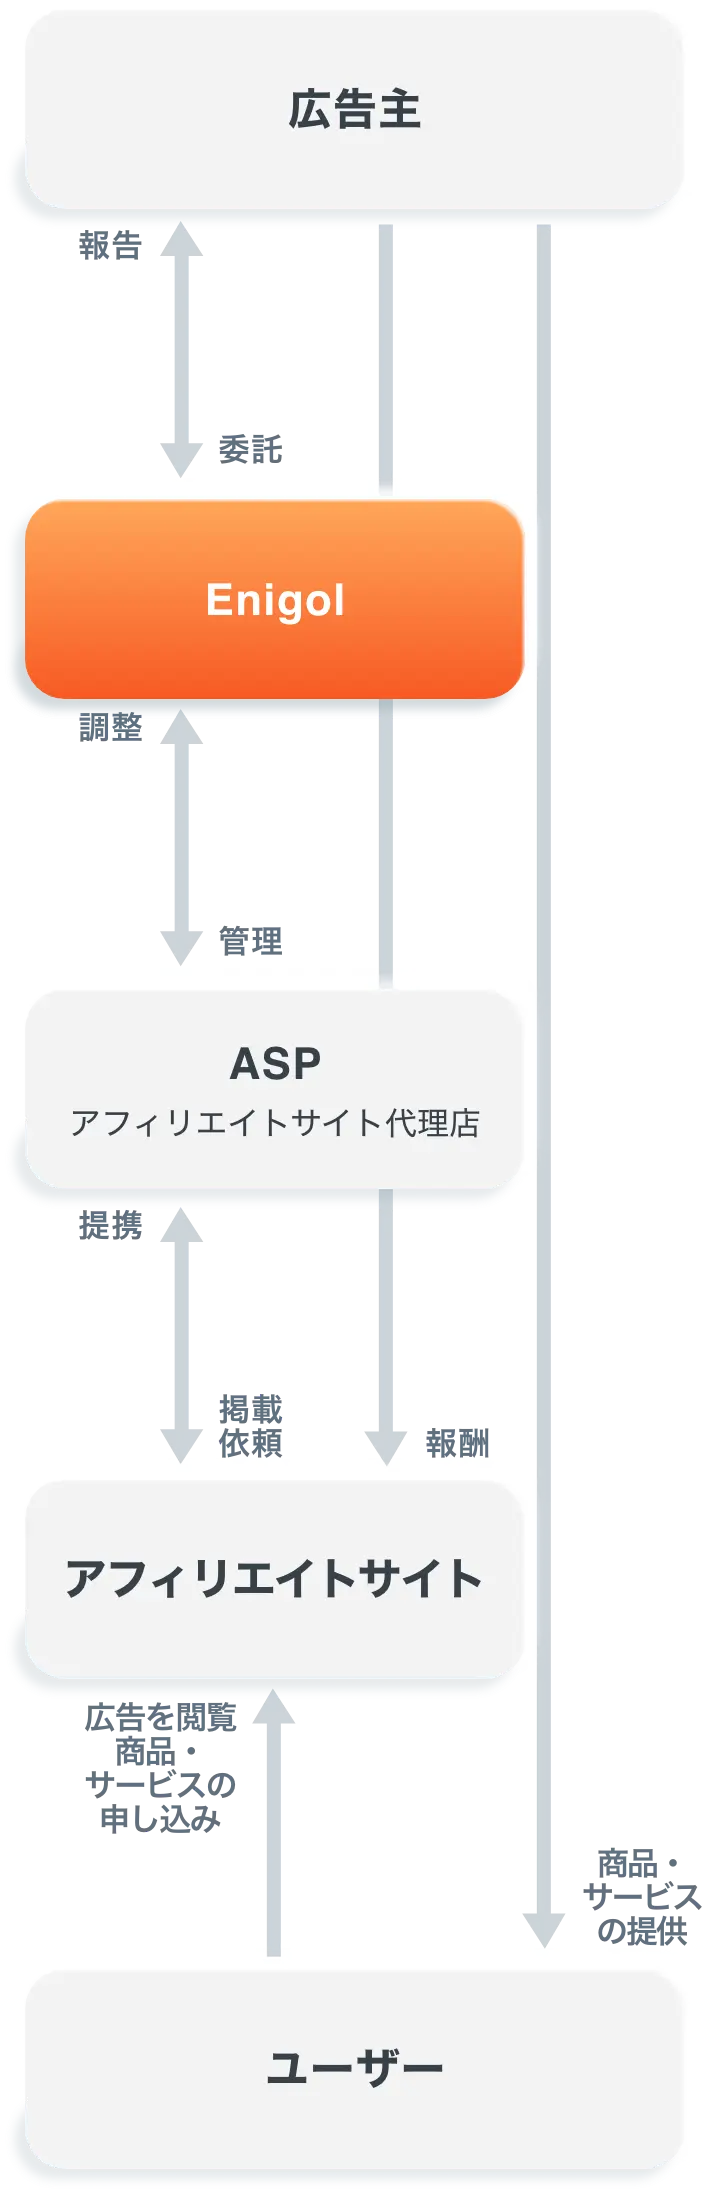 エニゴルがASPを通しユーザーに見てもらい、サービスが申し込まれるまでの流れの図